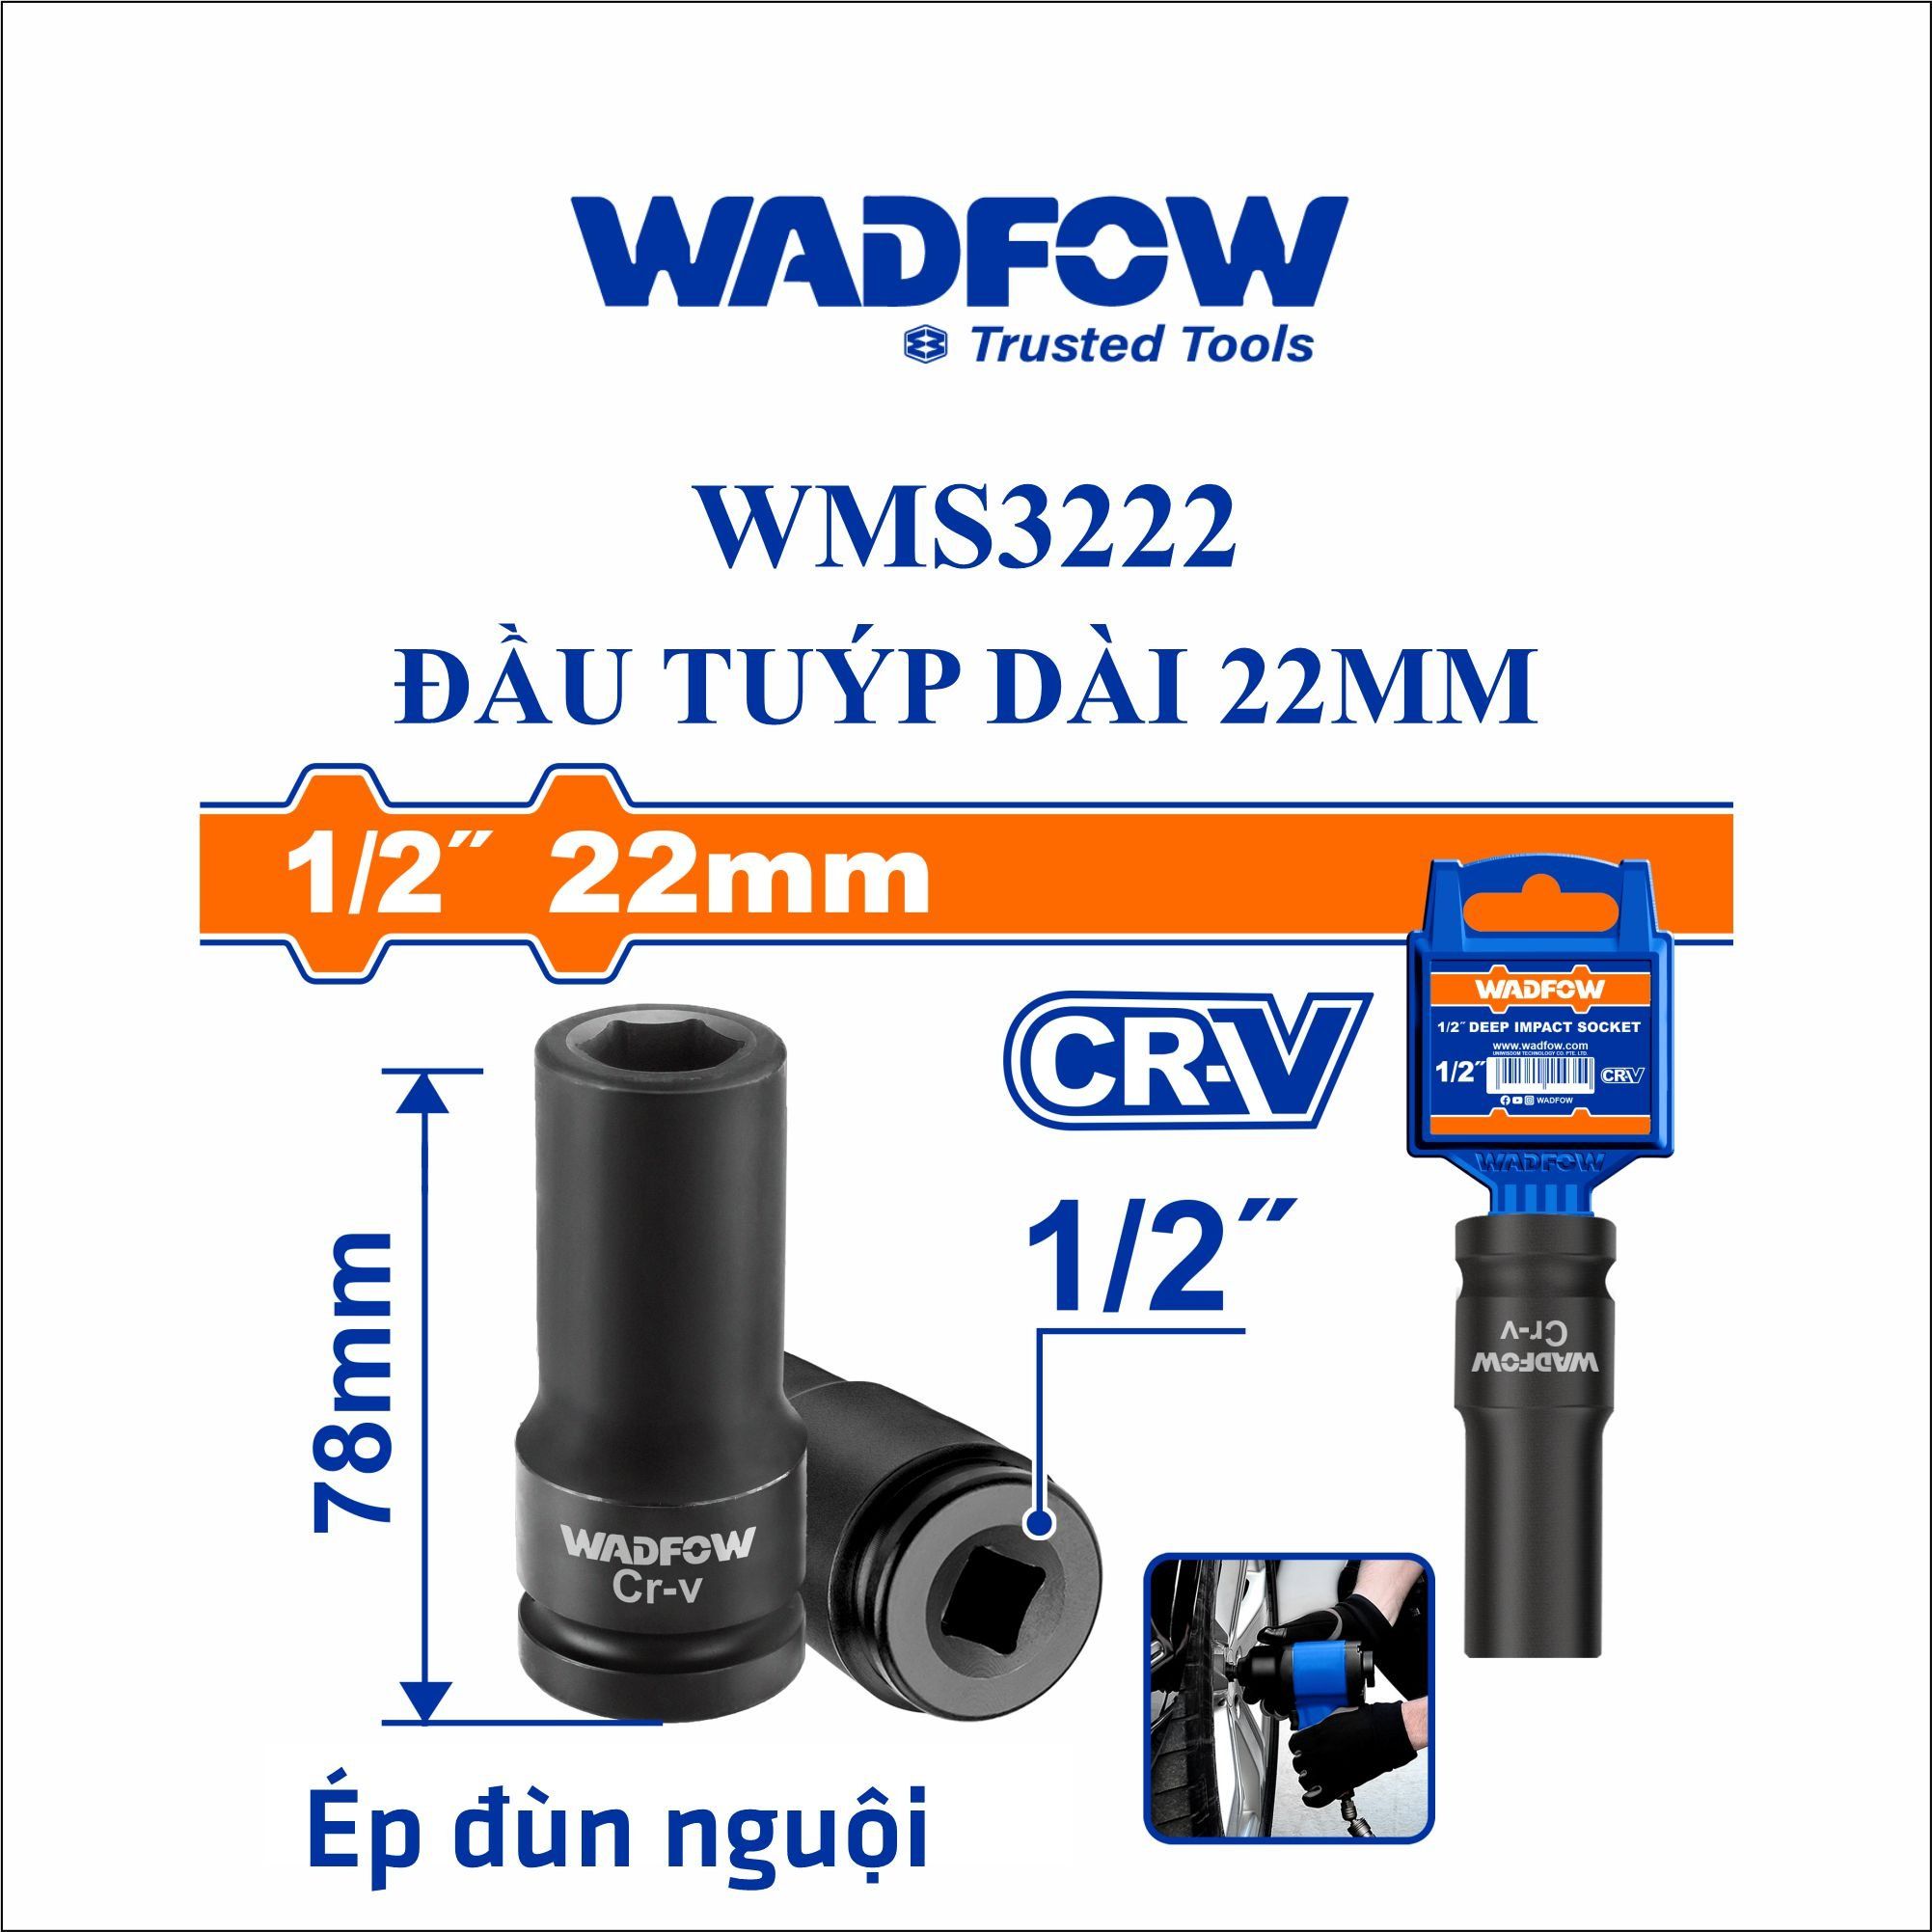  Đầu tuýp dài 22mm WADFOW WMS3222 